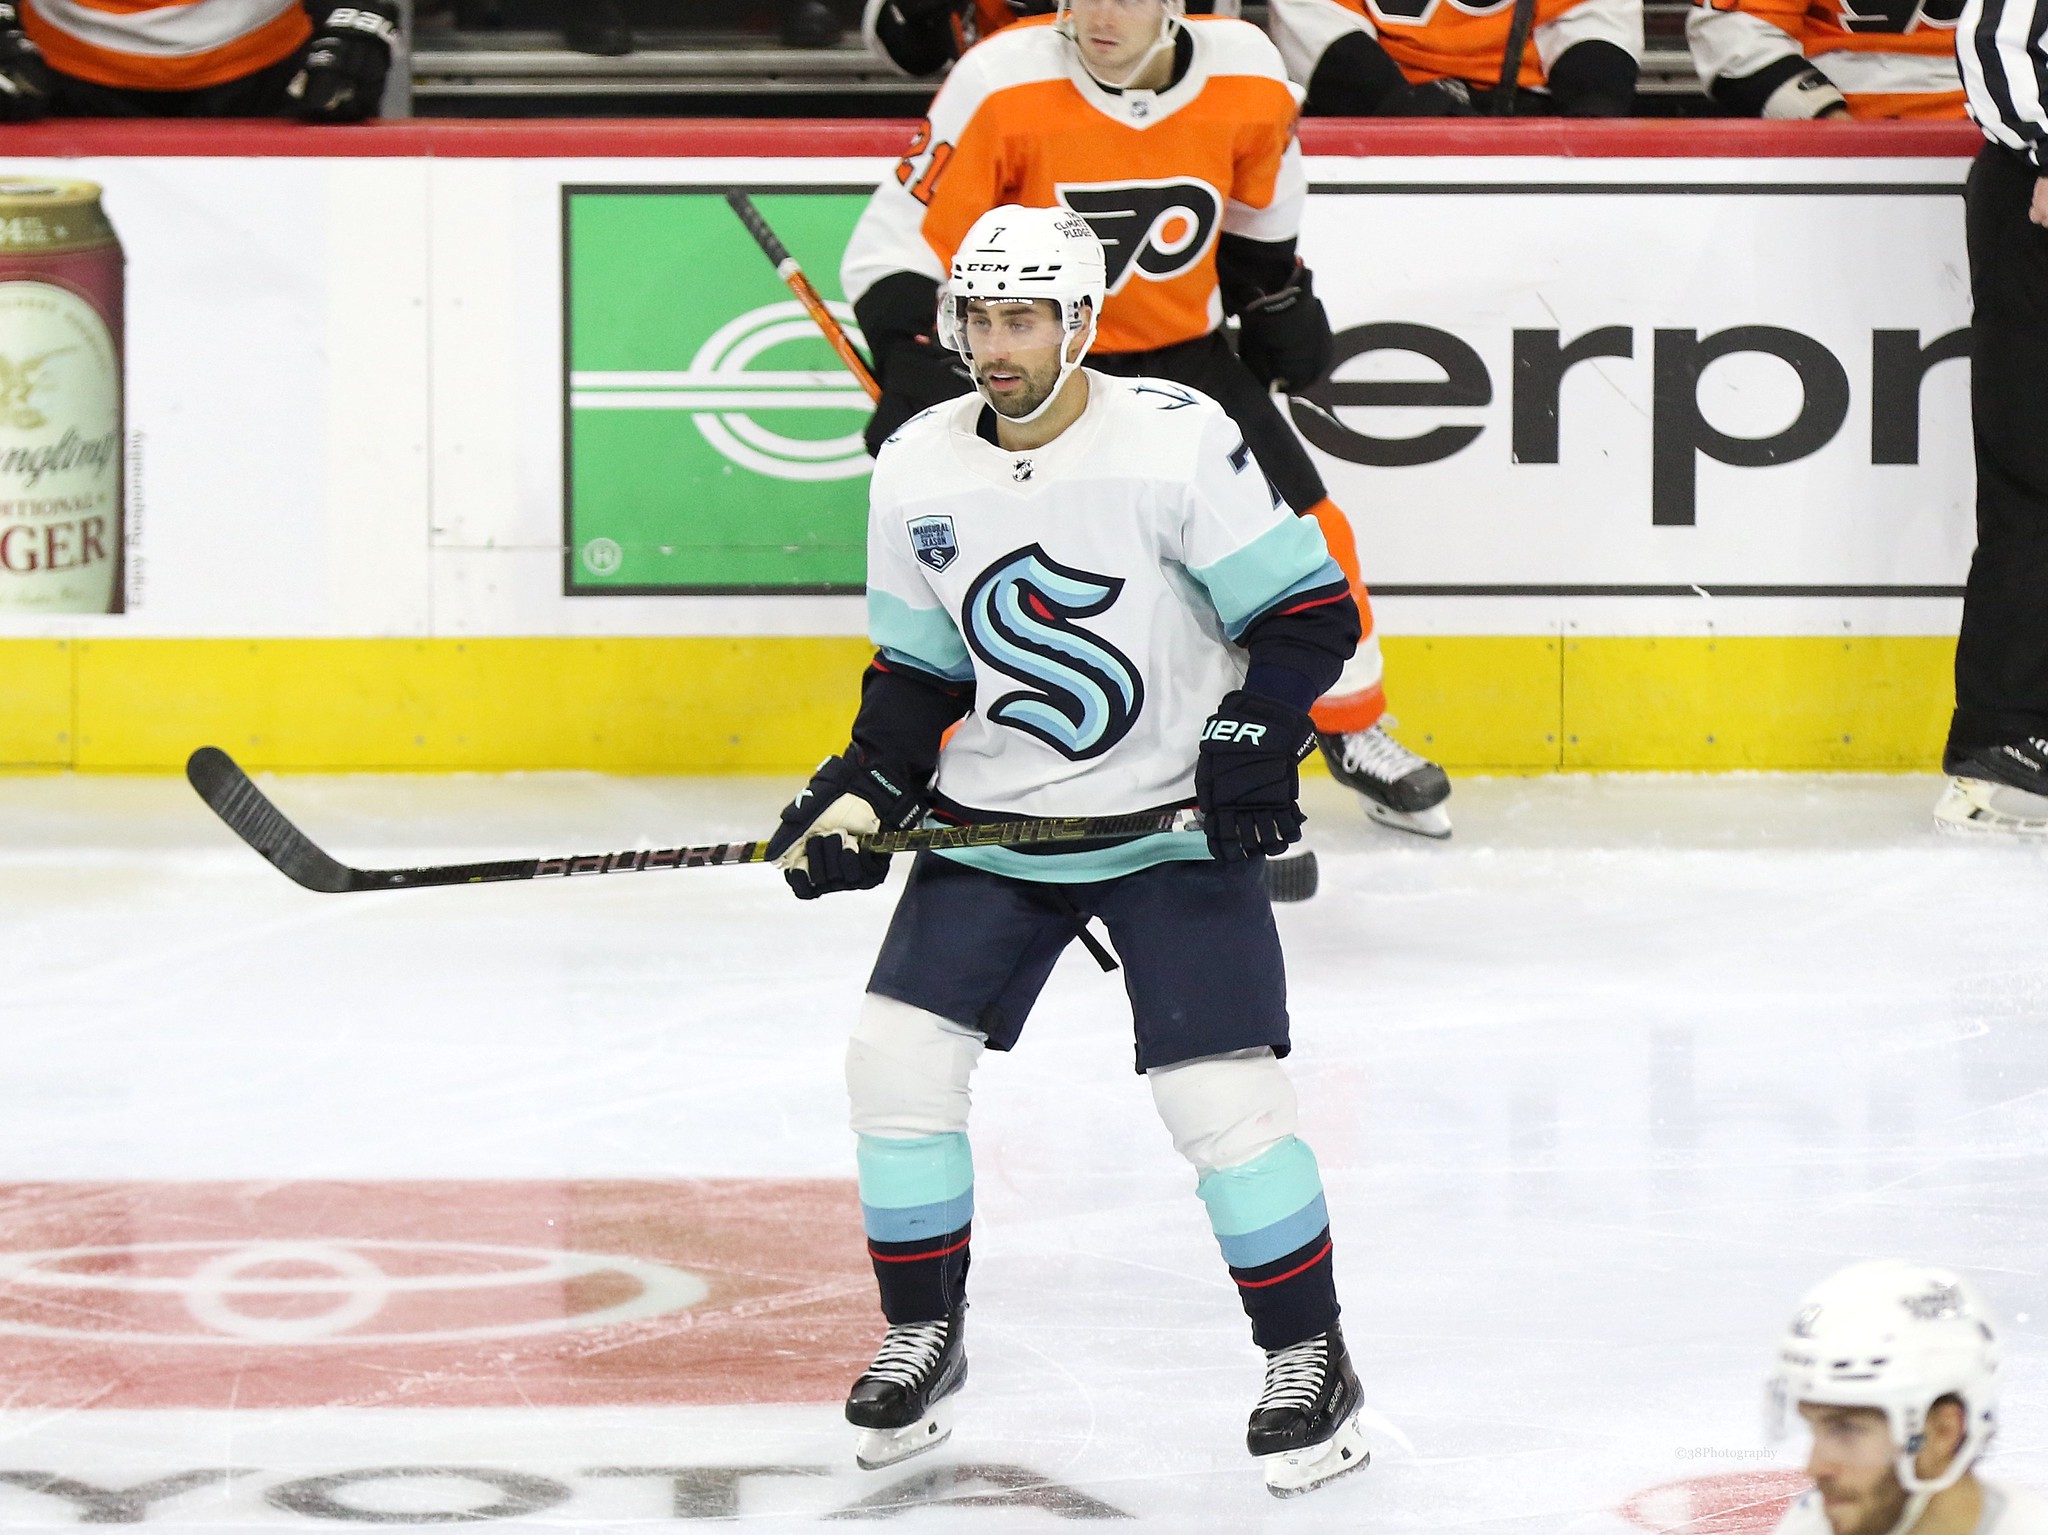 NHL free agency: Islanders re-sign forward Jordan Eberle